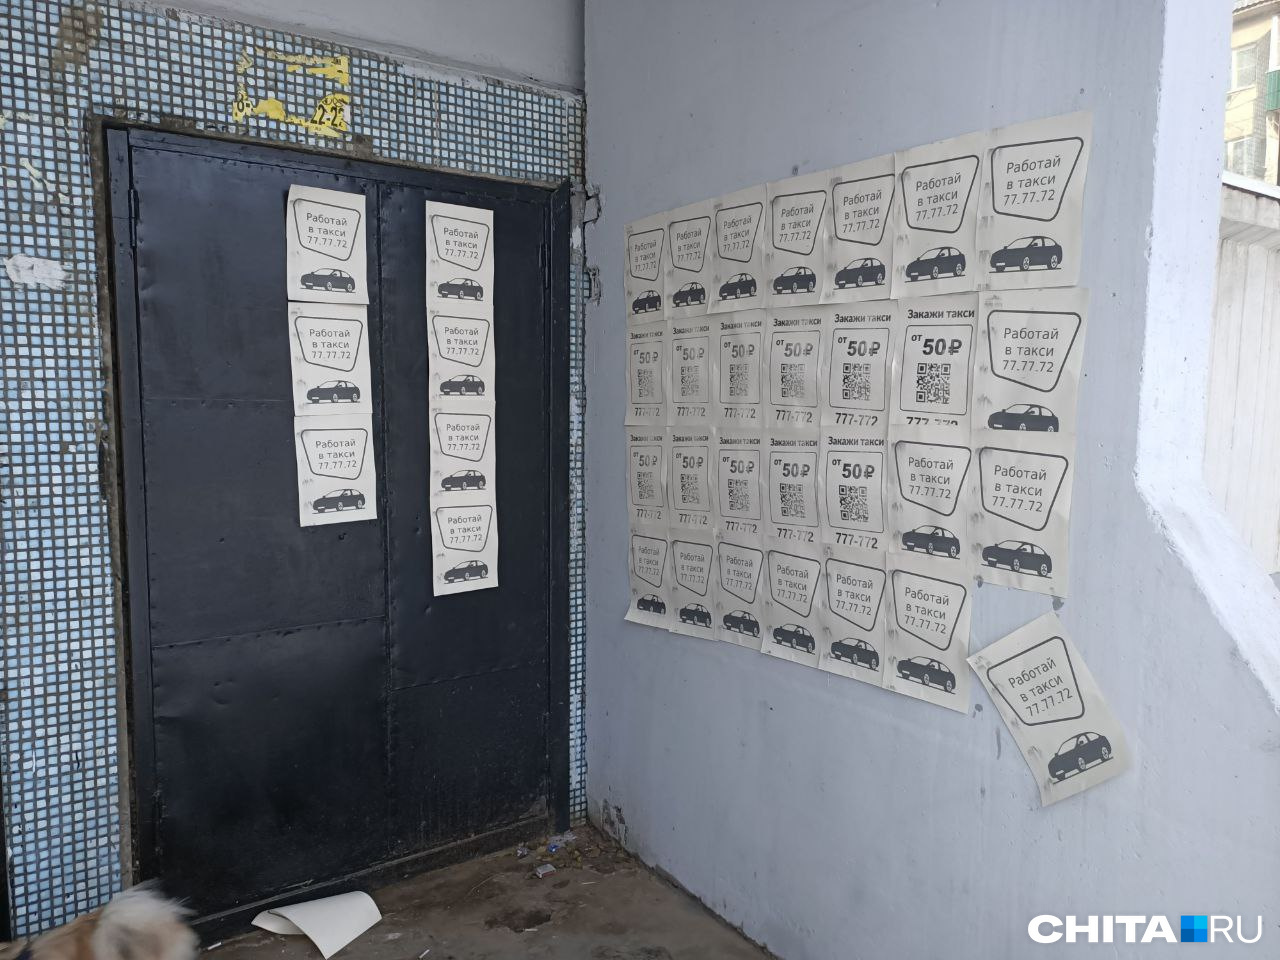 Рекламными листовками такси Mini облепили многоэтажки в Чите